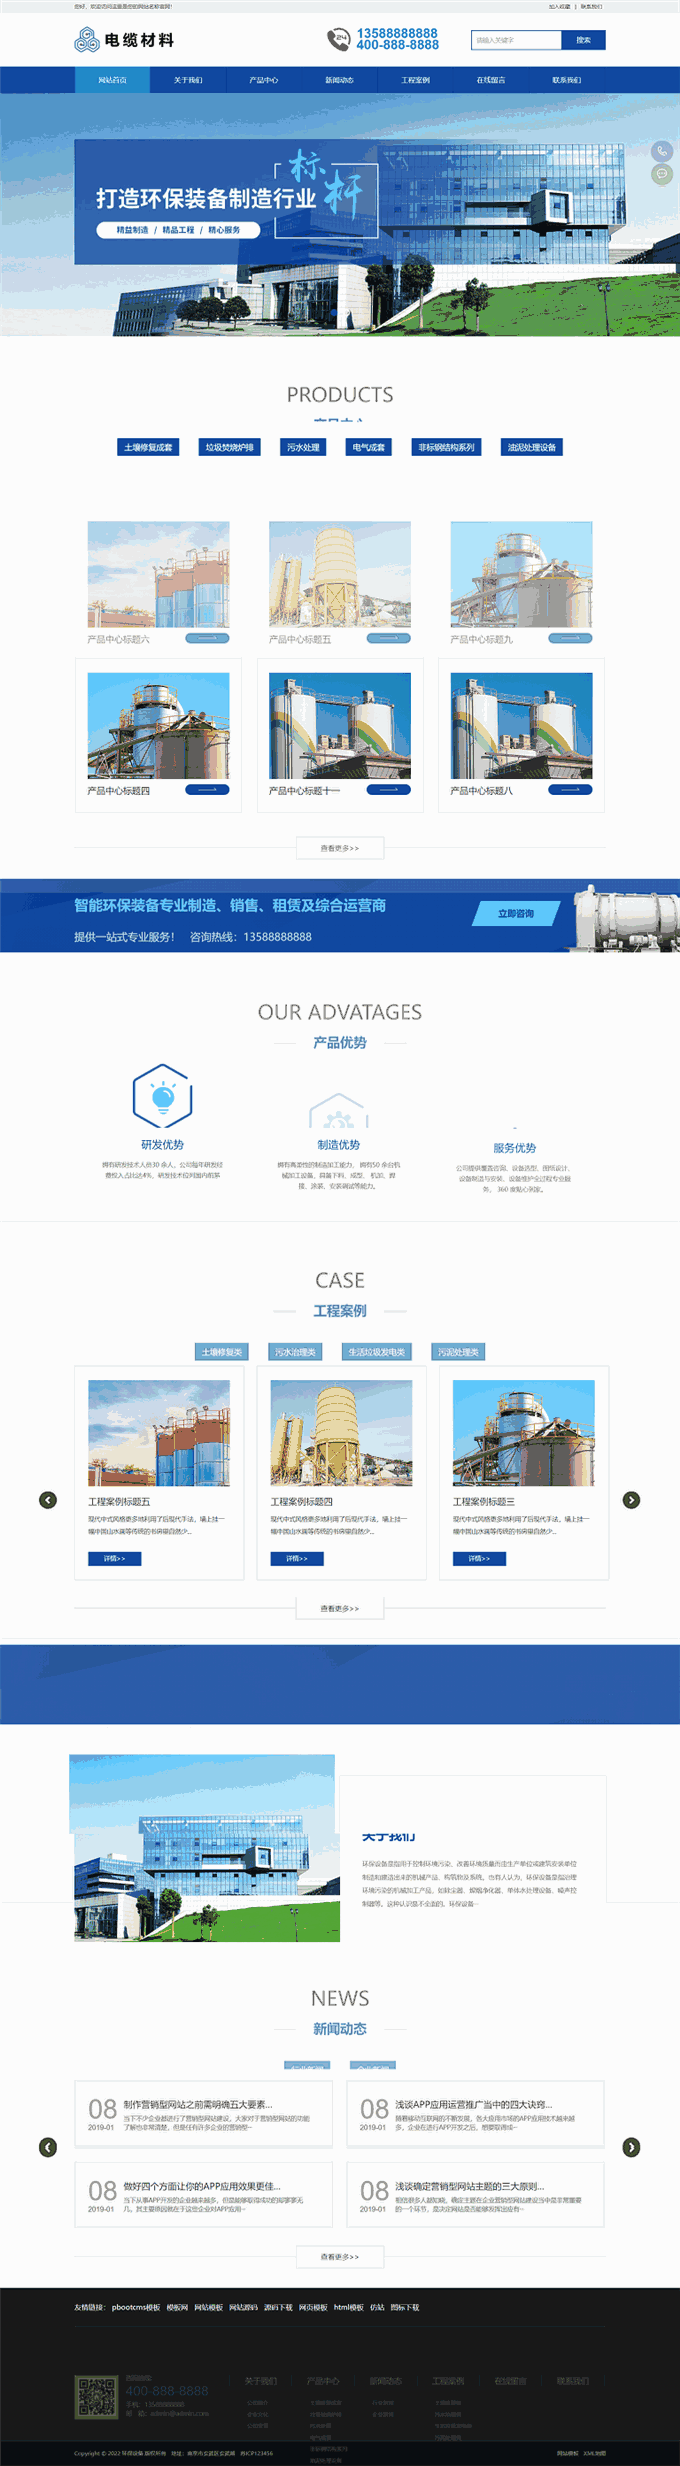 智能环保设备蓝色主题大型机械制造营销网站WordPress主题首页图